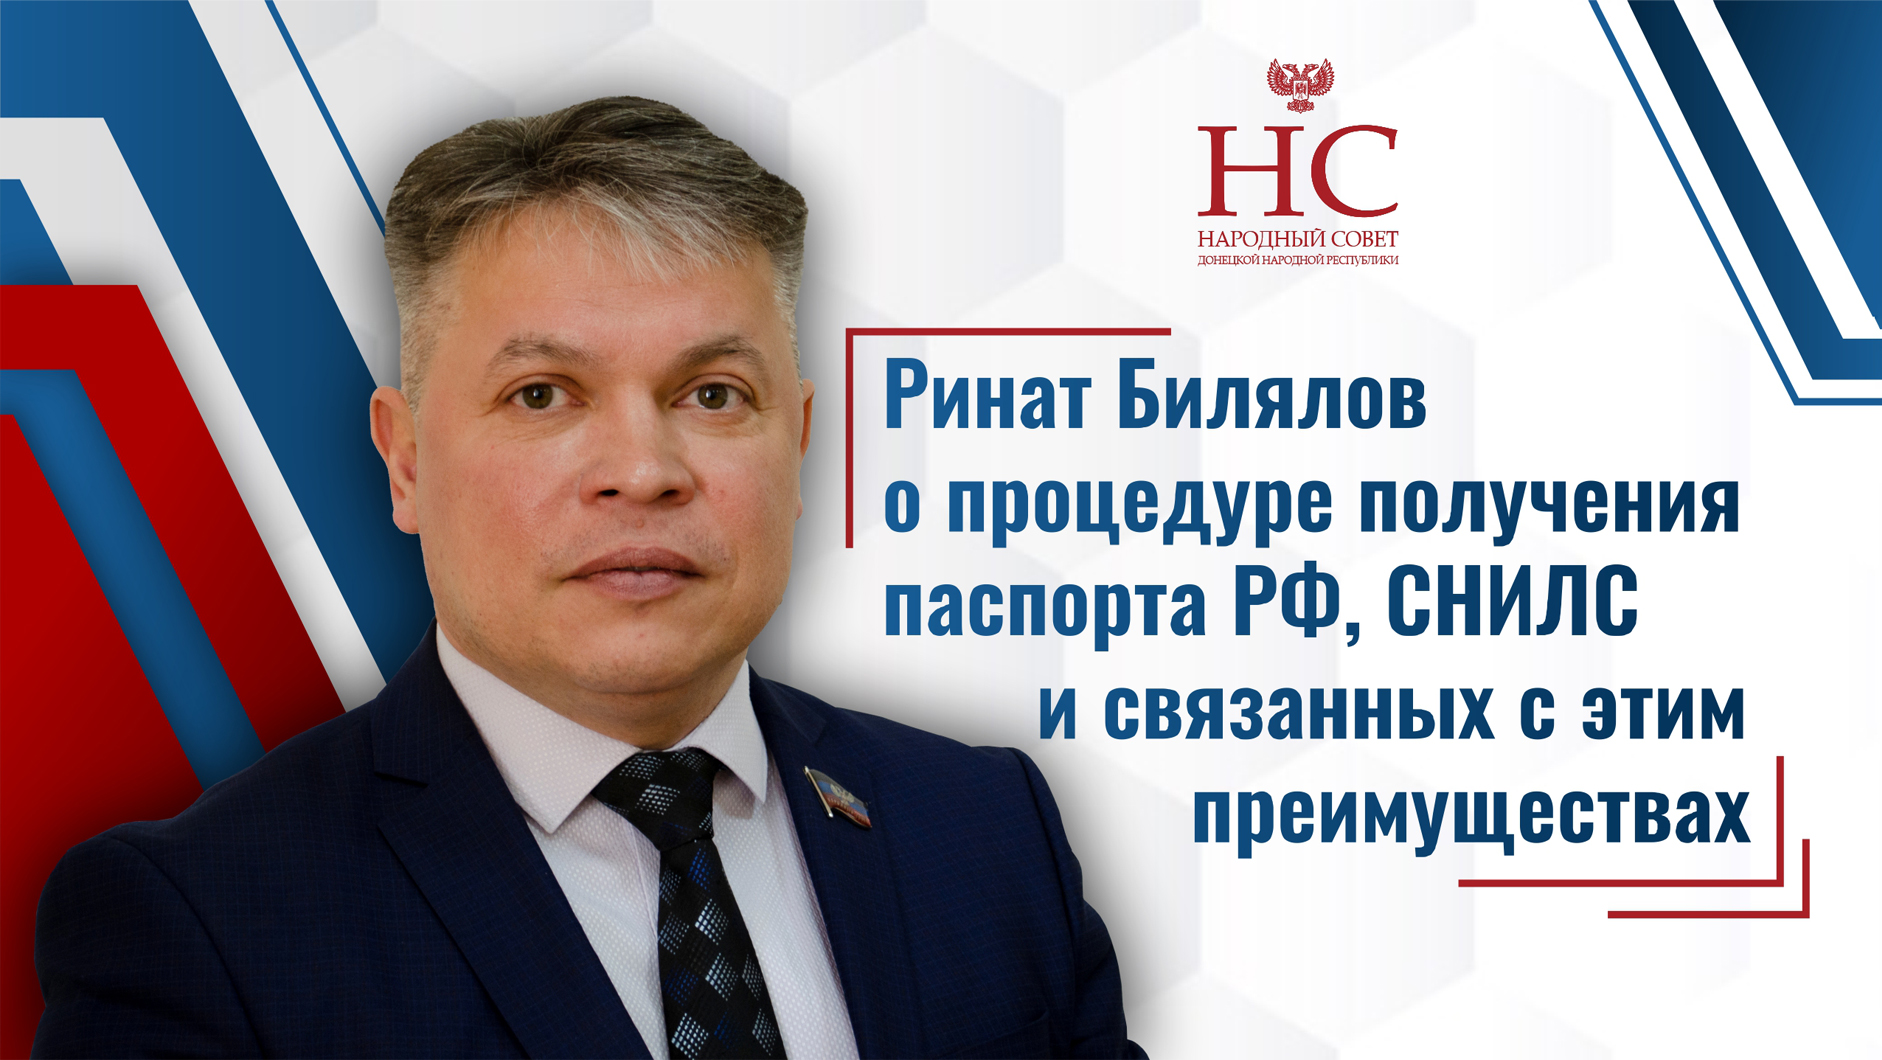 Ринат Билялов о процедуре получения паспорта РФ, СНИЛС и связанных с этим преимуществах